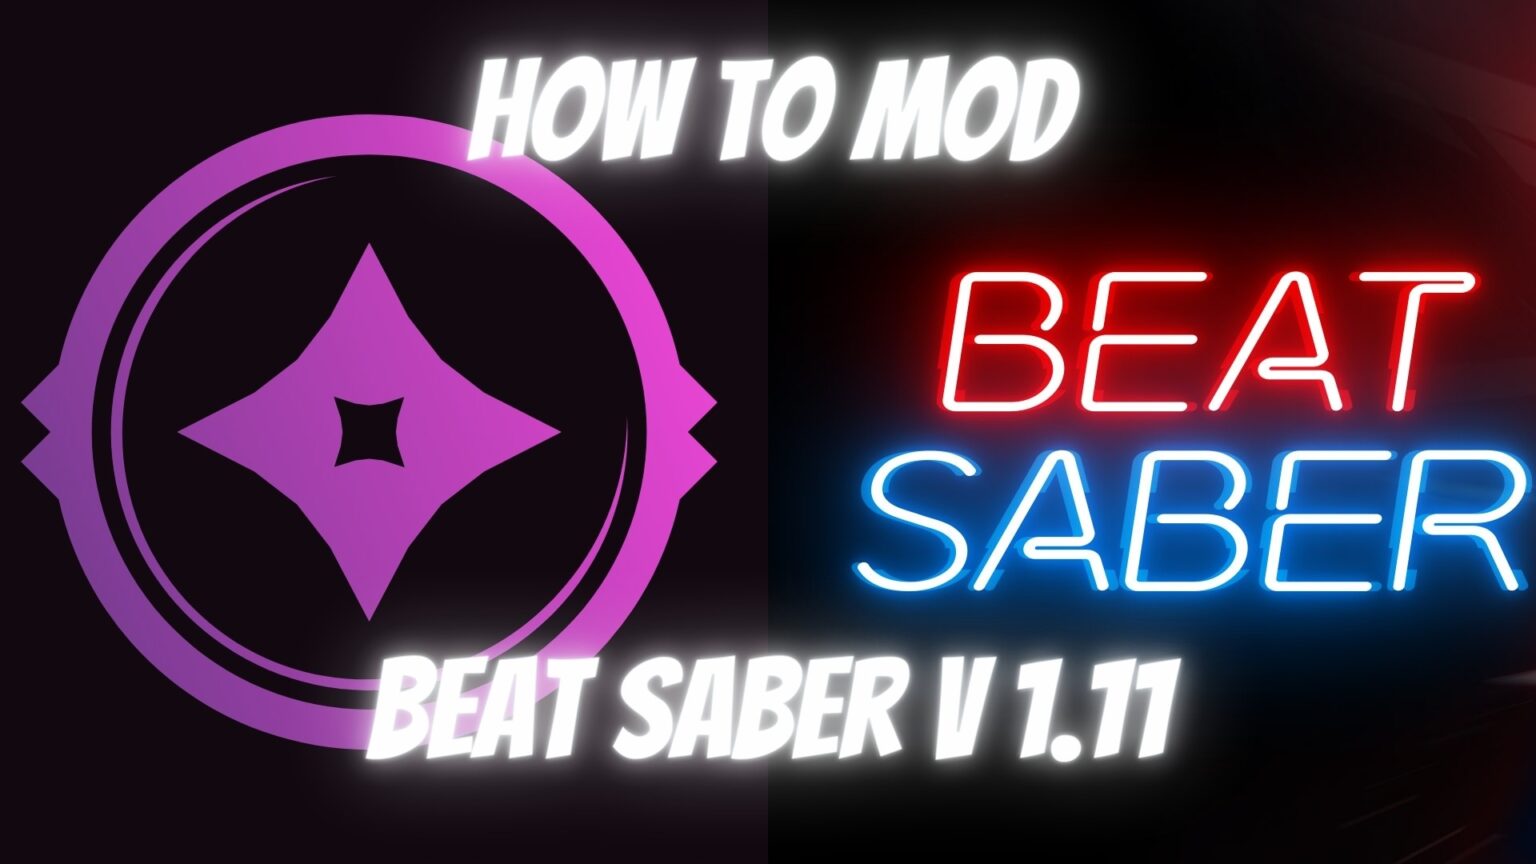 How to Mod Beat Saber